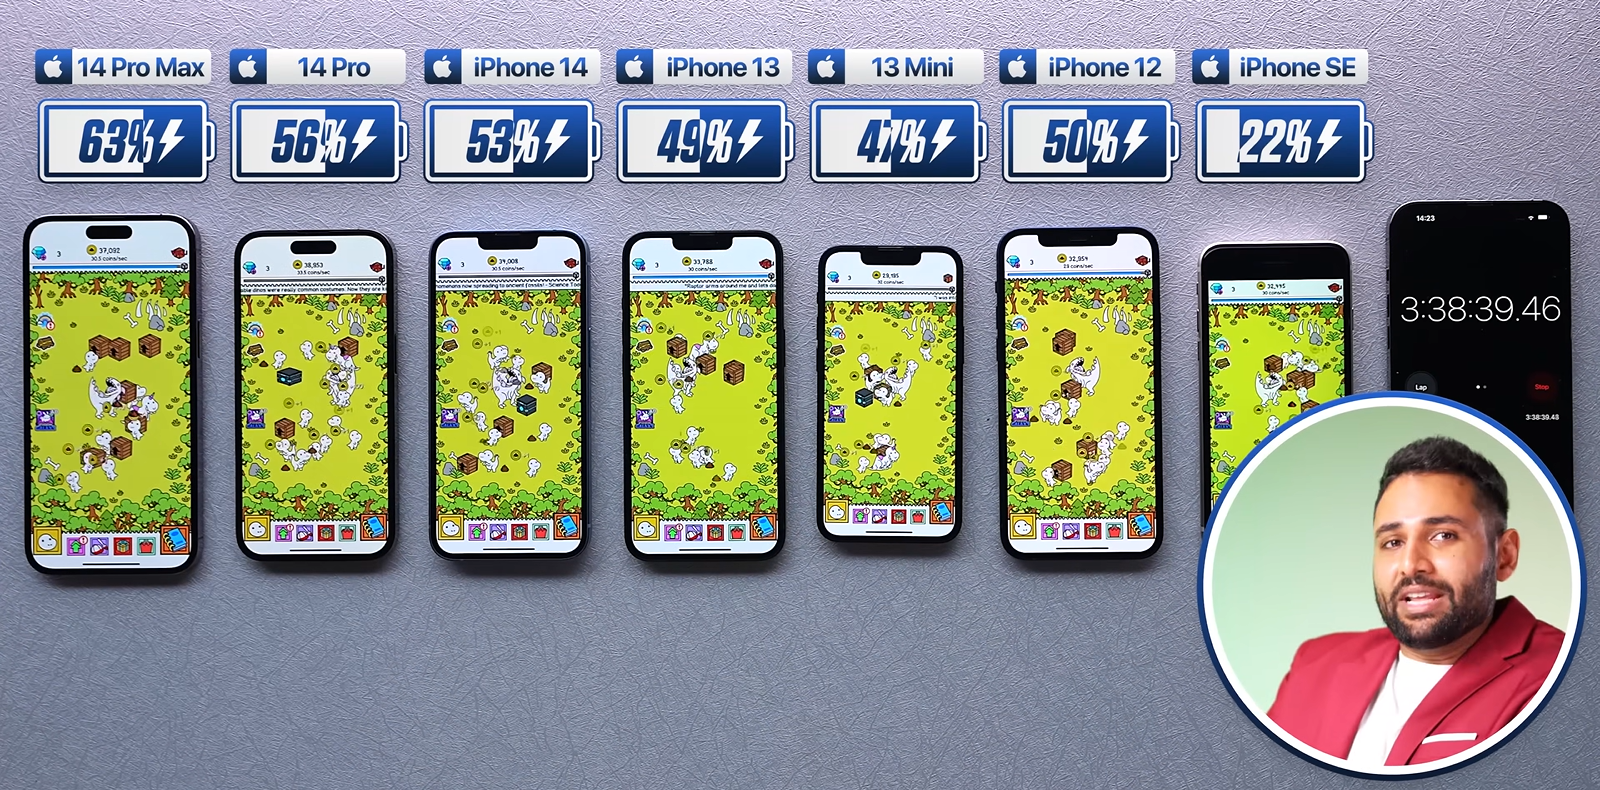 Сравнение айфон 13 и 12 про макс. Модели айфонов. Айфоны по размерам. Iphone 14 Pro Max. Айфон 13 расцветки.